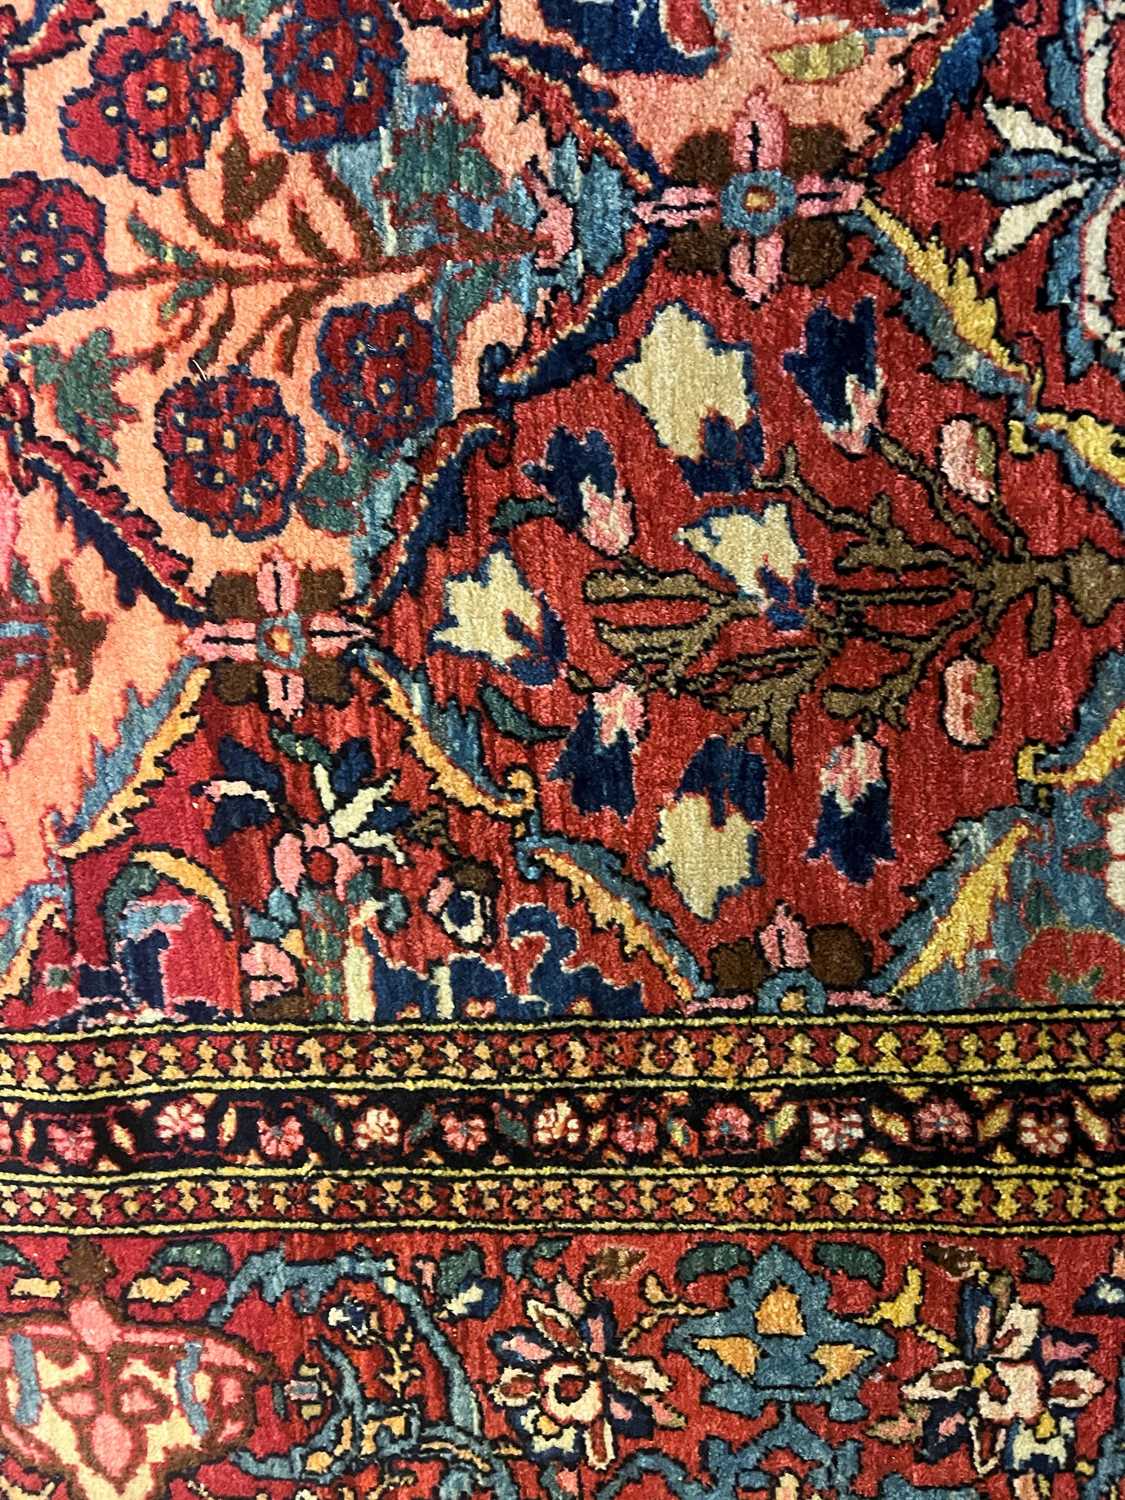 A Kashan wool rug - Image 31 of 59